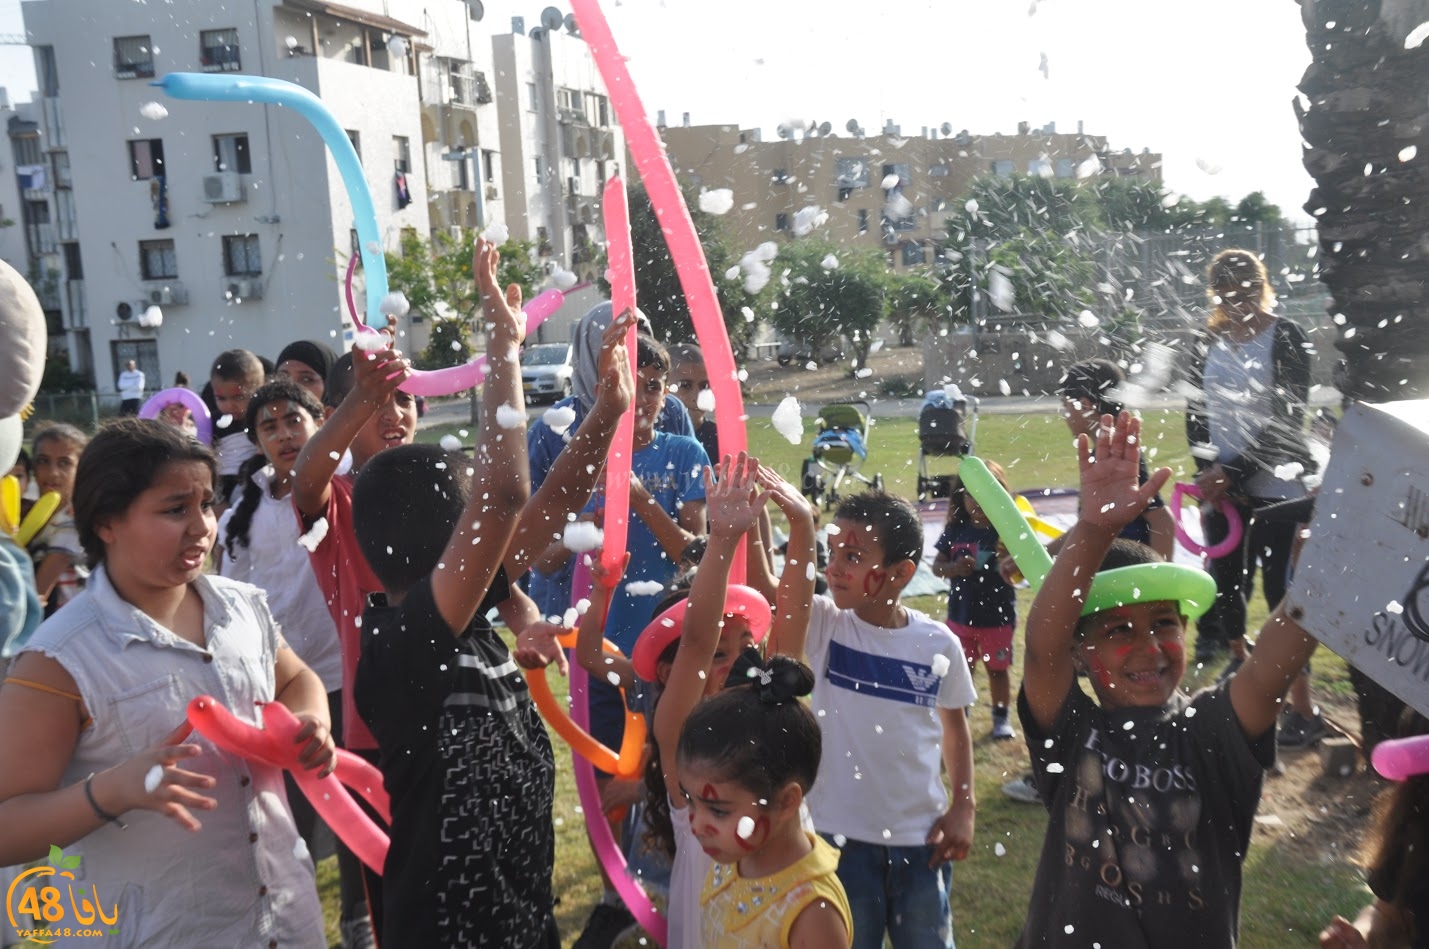  بالصور: فعاليات شيّقة للصغار في ساحة كيدرون بحي الجبلية في يافا